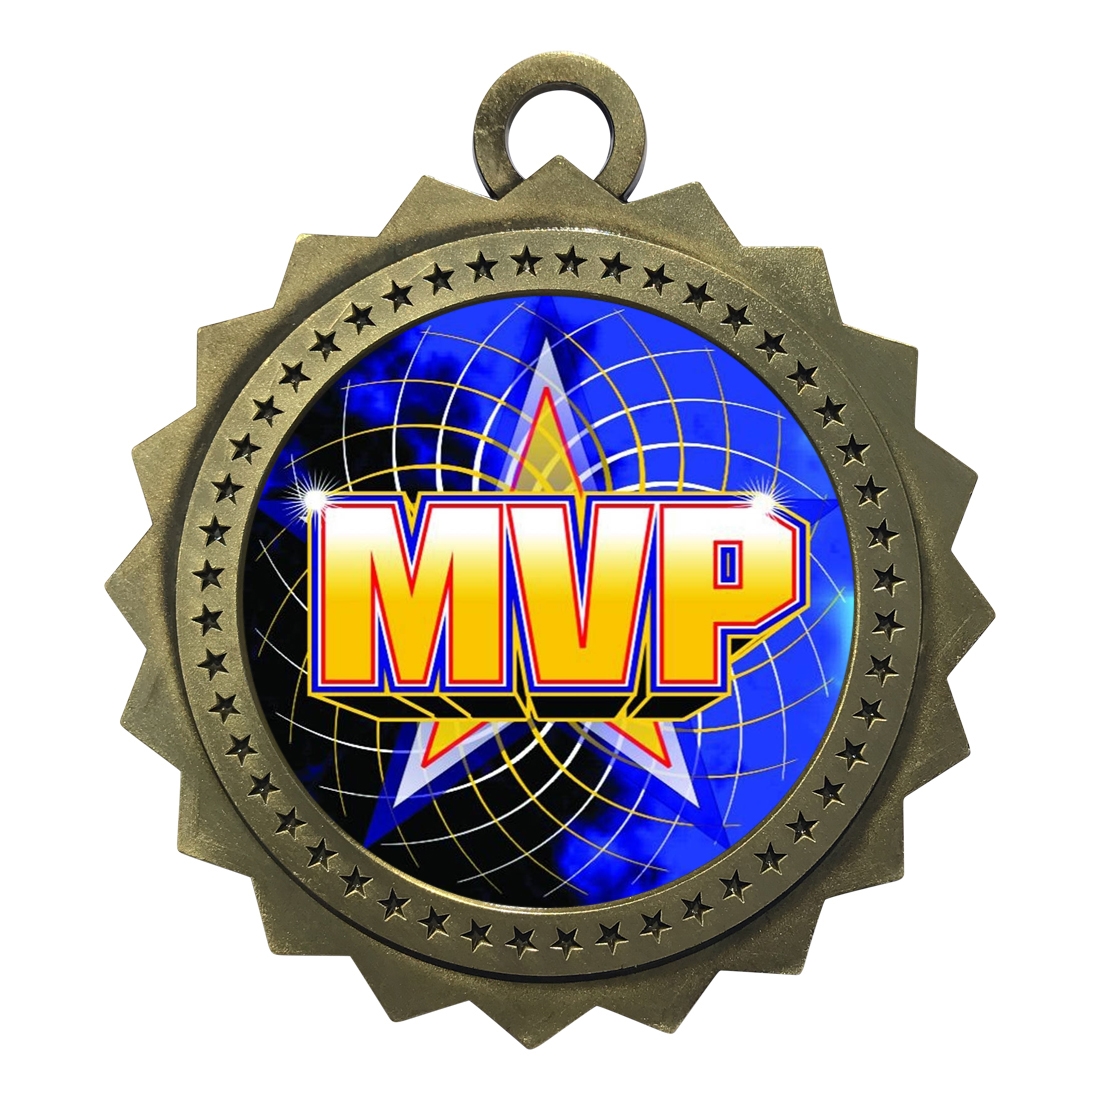 3" MVP Medal